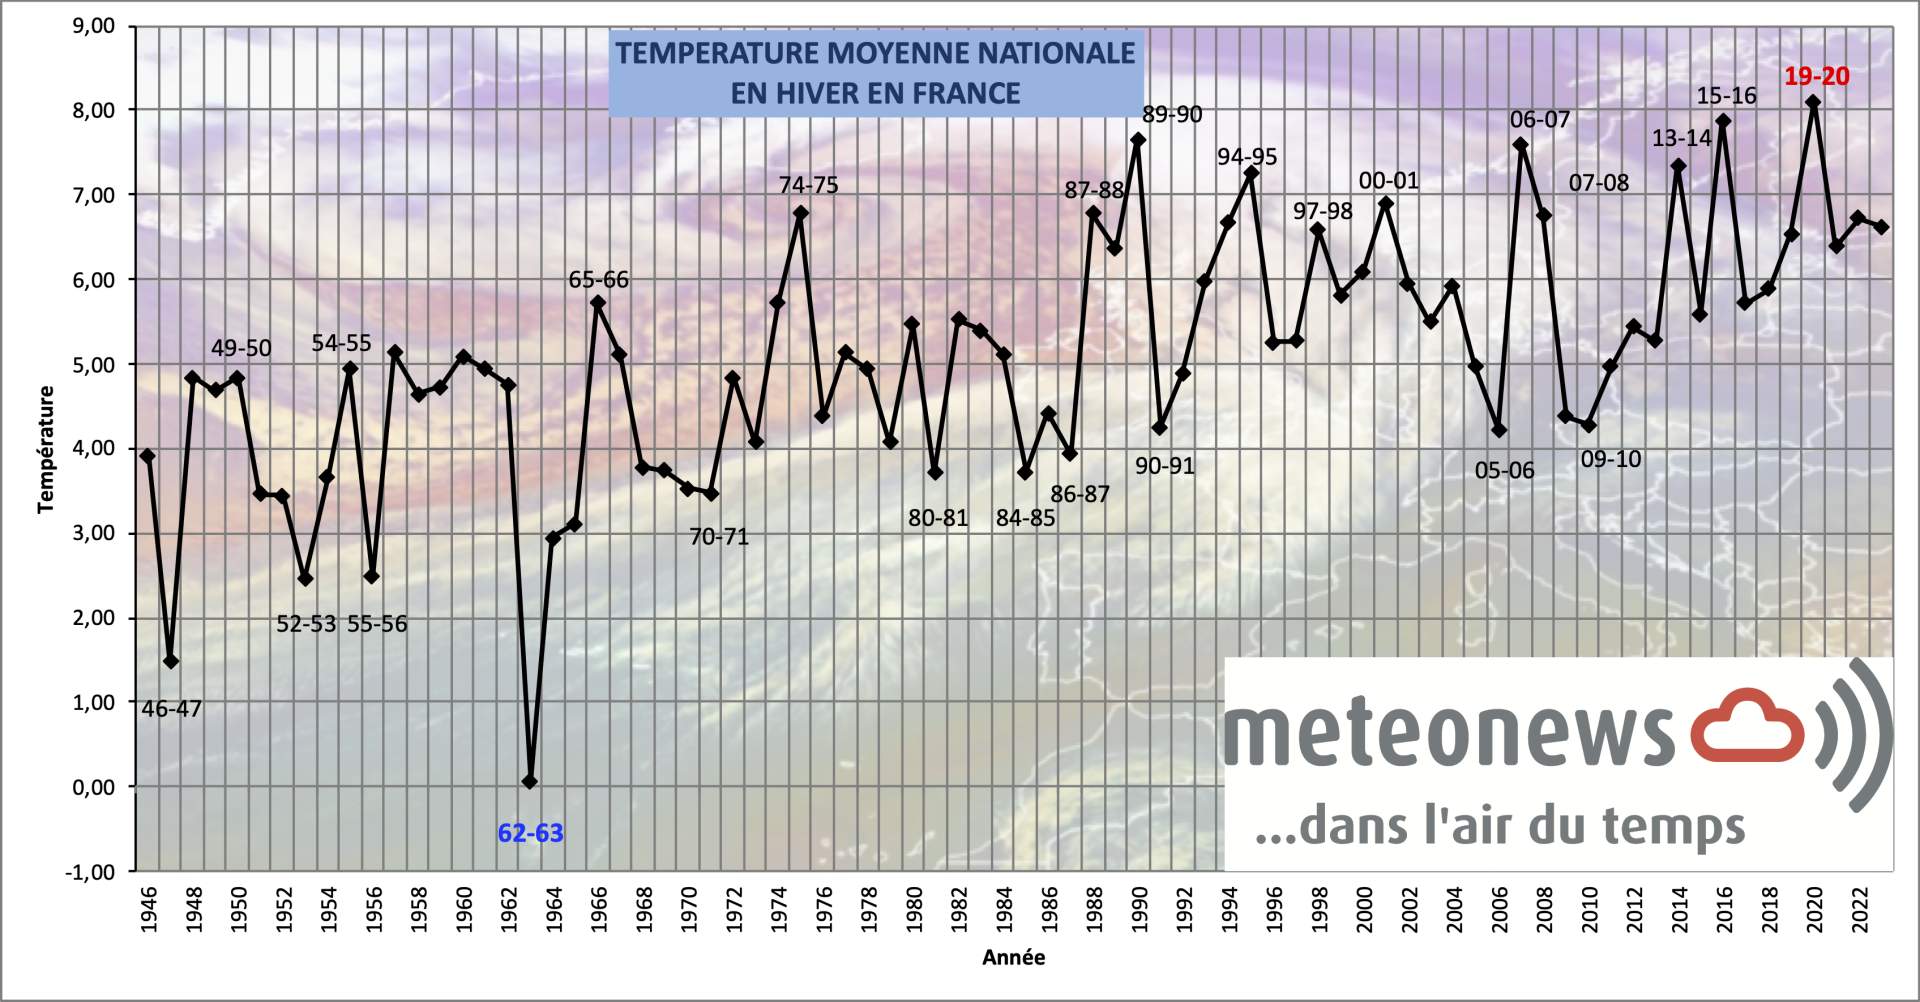 Température moyenne nationale mensuelle en hiver en France; Source: MeteoNews